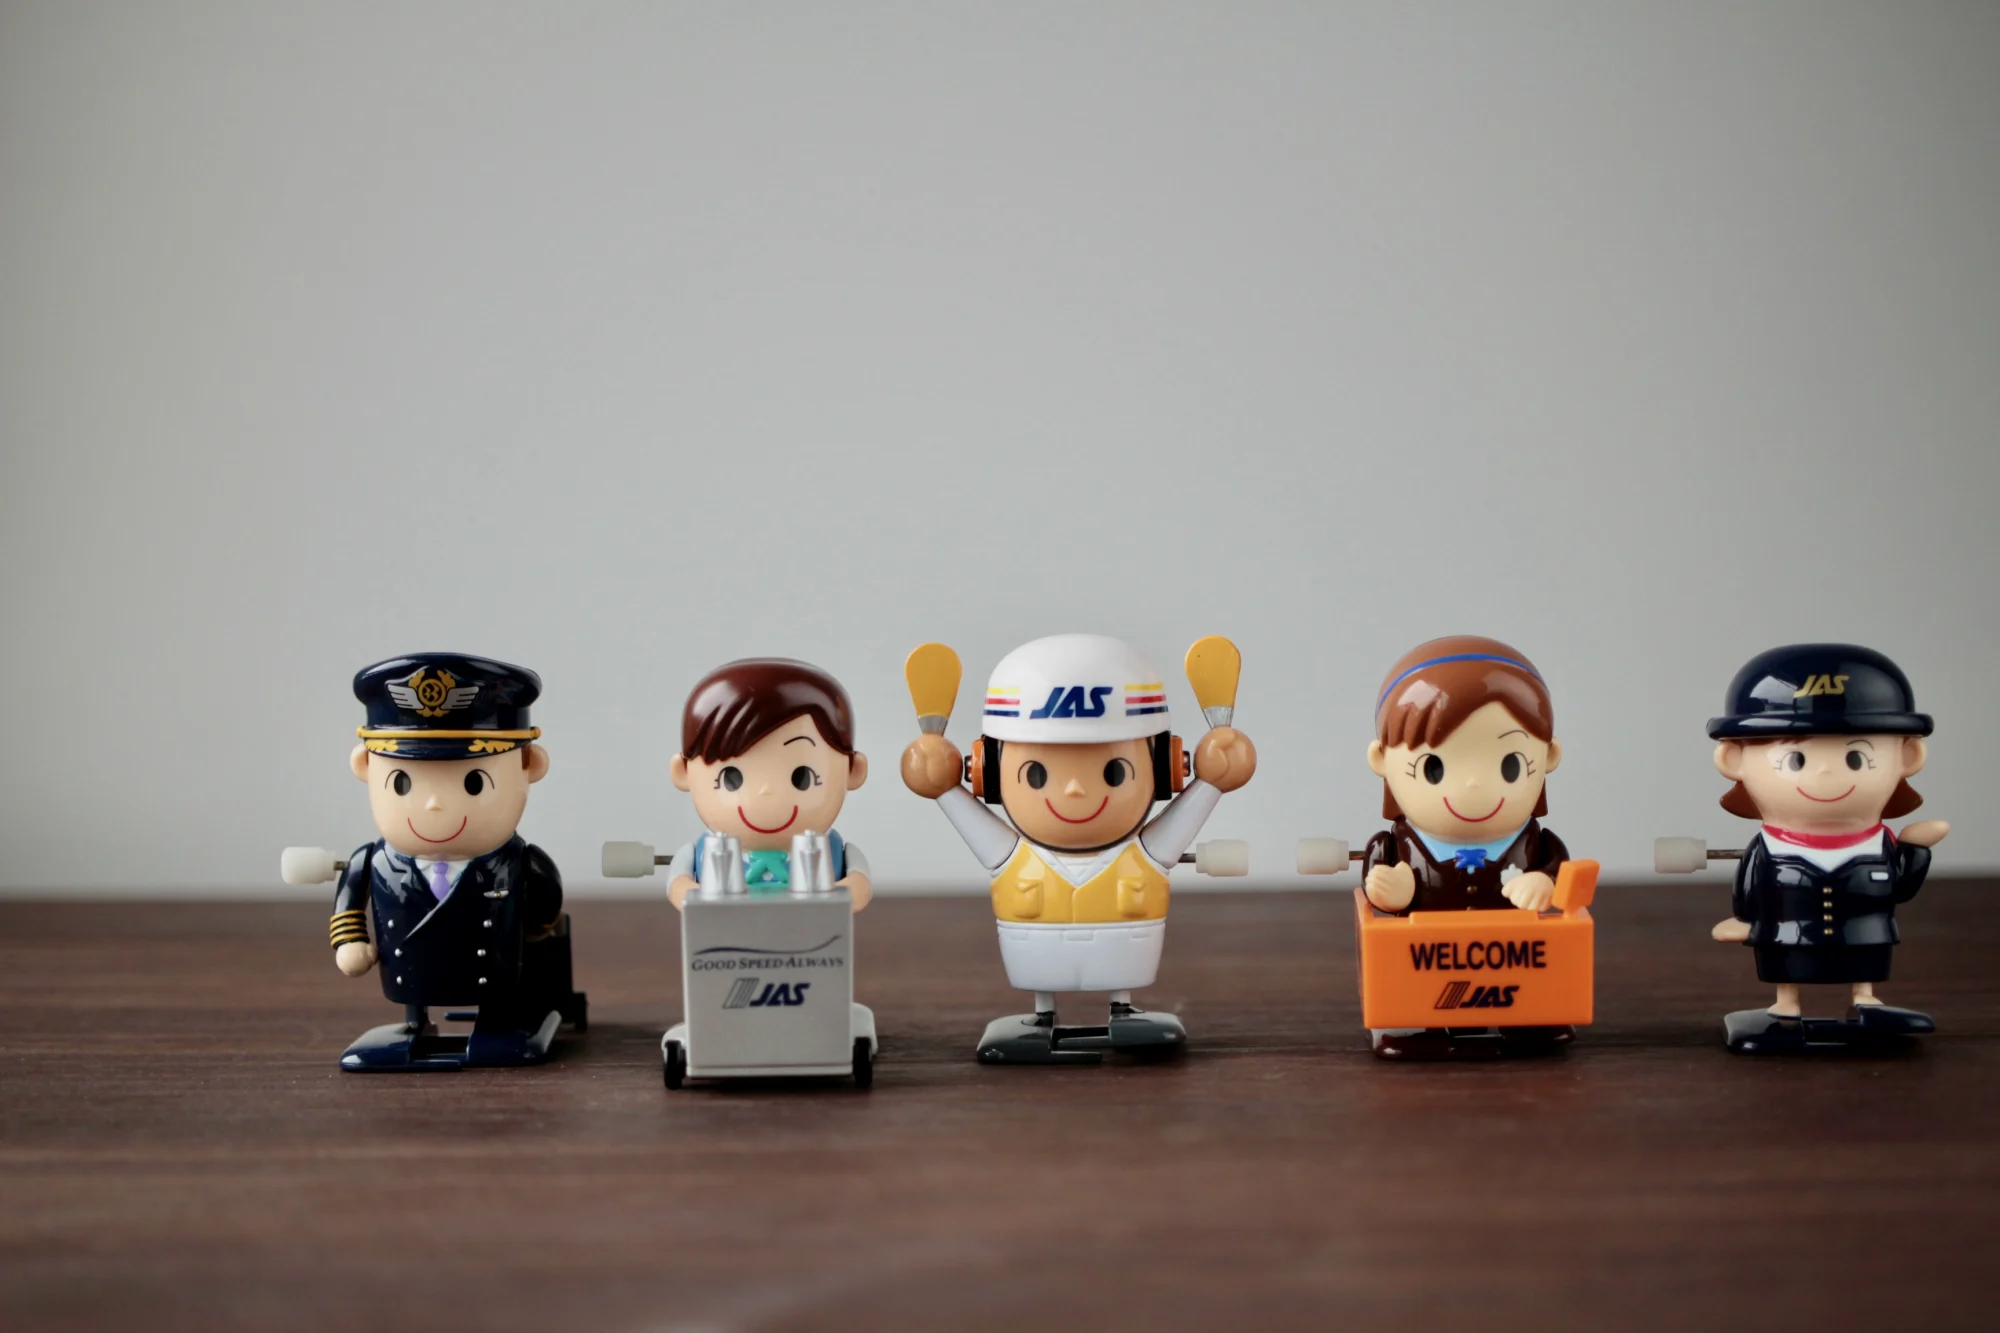 90年代日本JAS航空出品了一组发条玩具，玩具造型分别为JAS机长、空乘、地面引导员、地勤和推车空乘。